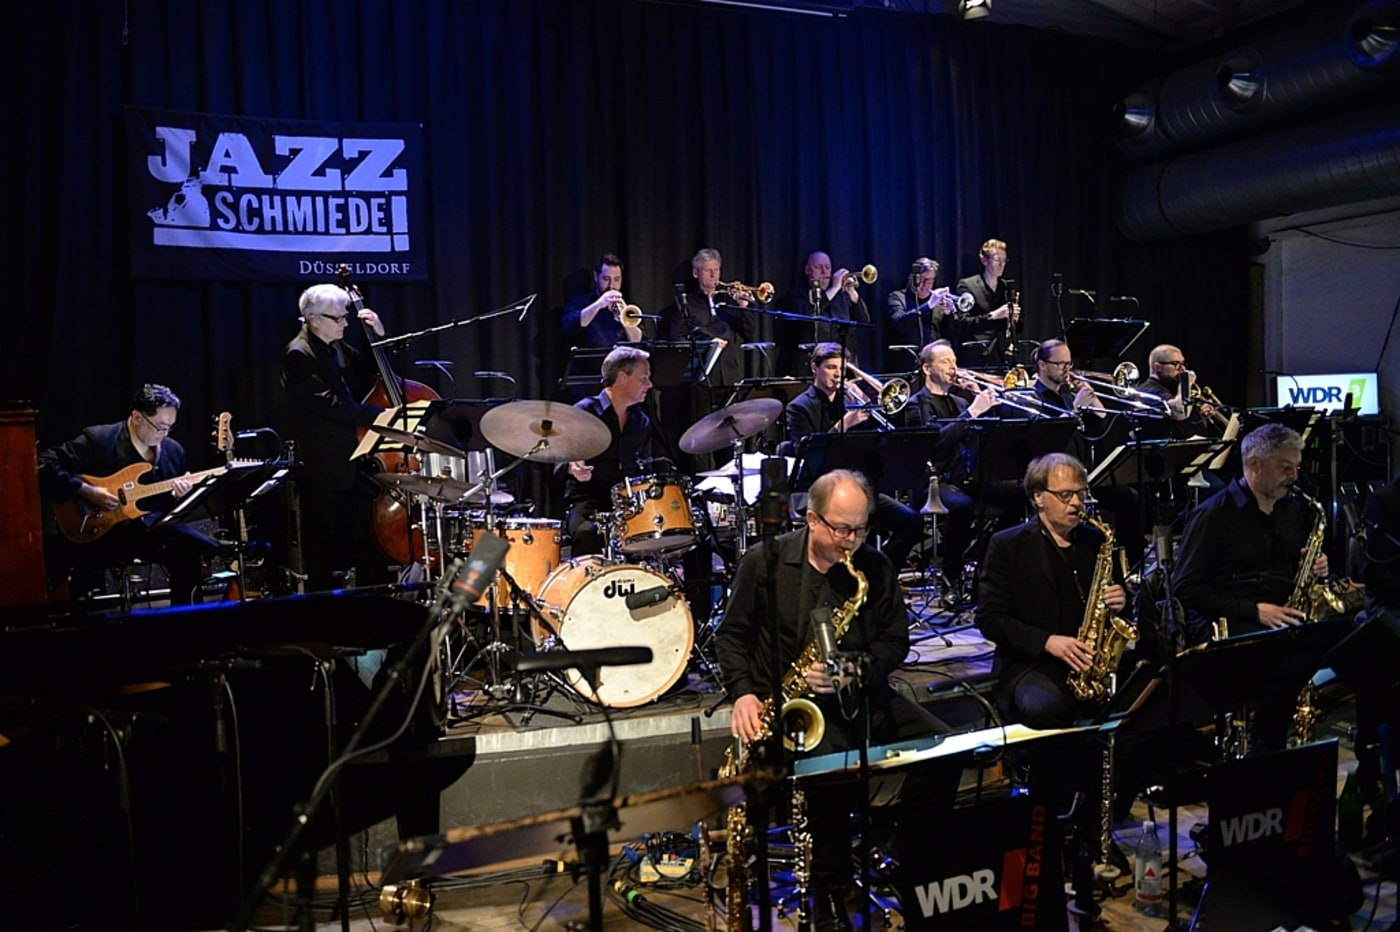 Wdr Big Band Jazz Schmiede Düsseldorf